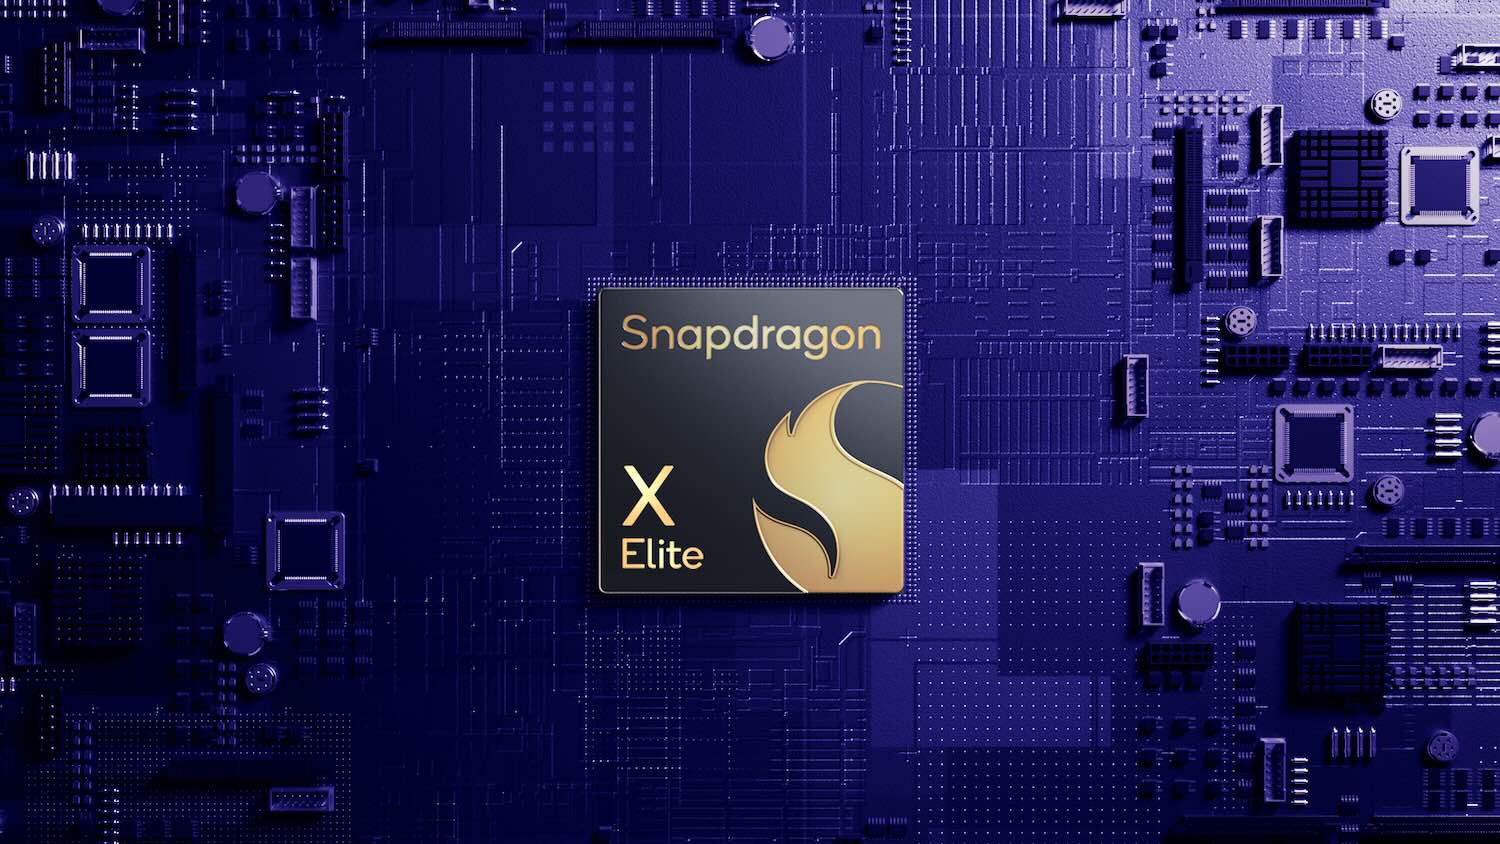 Ban-sao-Snapdragon-X-Elite_Hero-Image.jpg